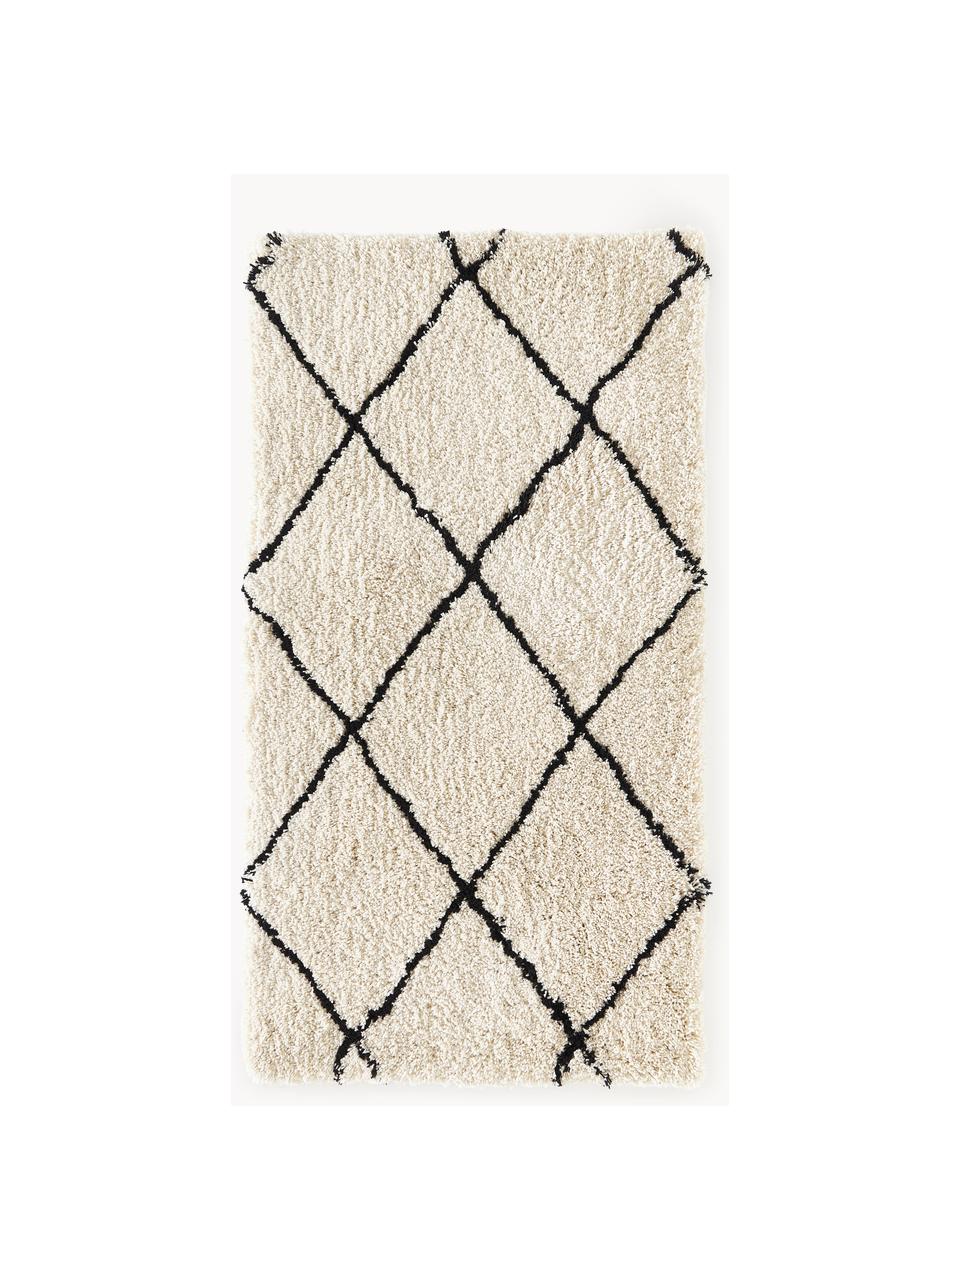 Flauschiger Hochflor-Teppich Naima, handgetuftet, 100 % Polyester, Beige, Schwarz, B 400 x L 500 cm  (Größe XXL)